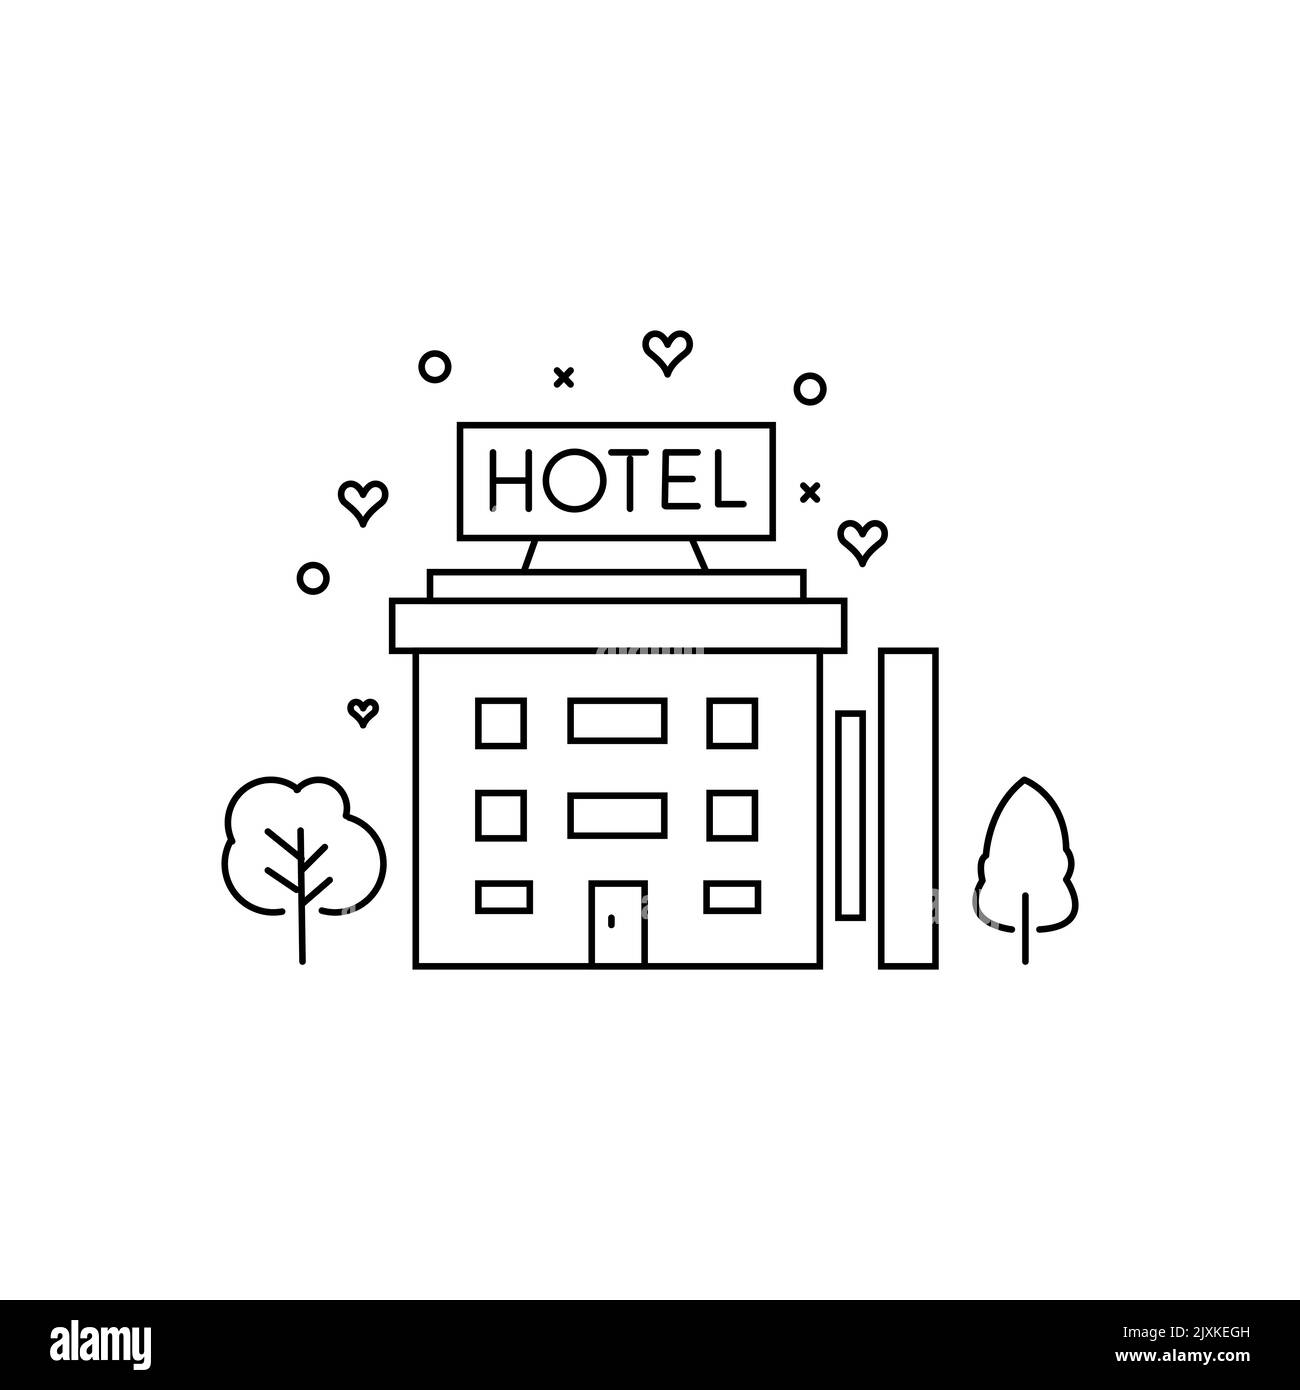 Icona semplice dell'hotel linea sottile nera. logo di motel o ostello in stile a tratto piatto, design d'arte minimale isolato su sfondo bianco. Illustrazione Vettoriale